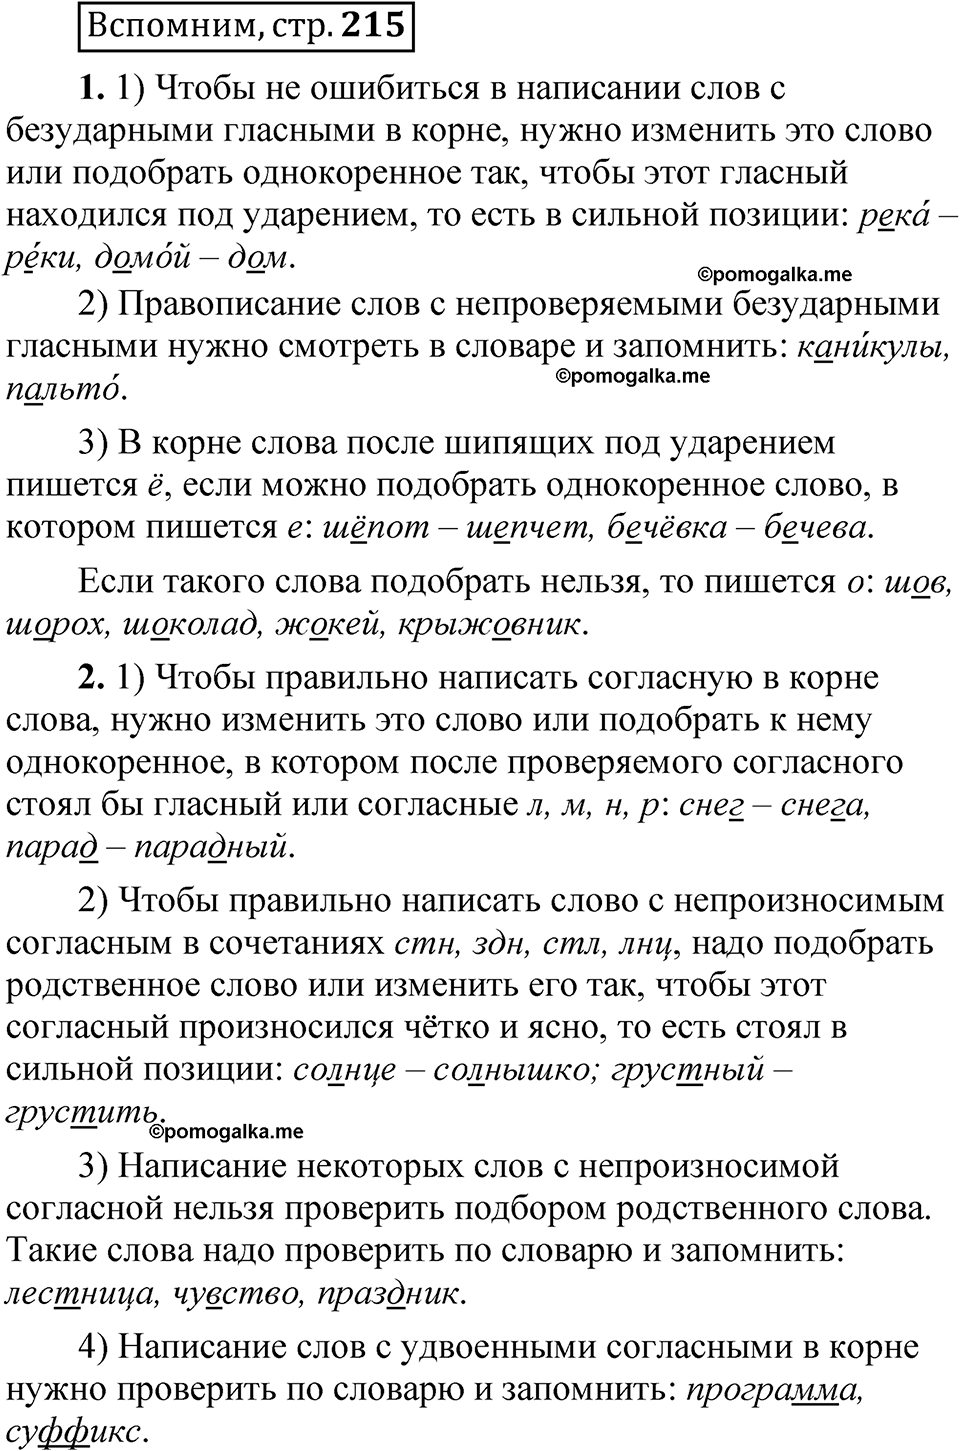 страница 215 Вспомним русский язык 5 класс Быстрова, Кибирева 1 часть 2021 год